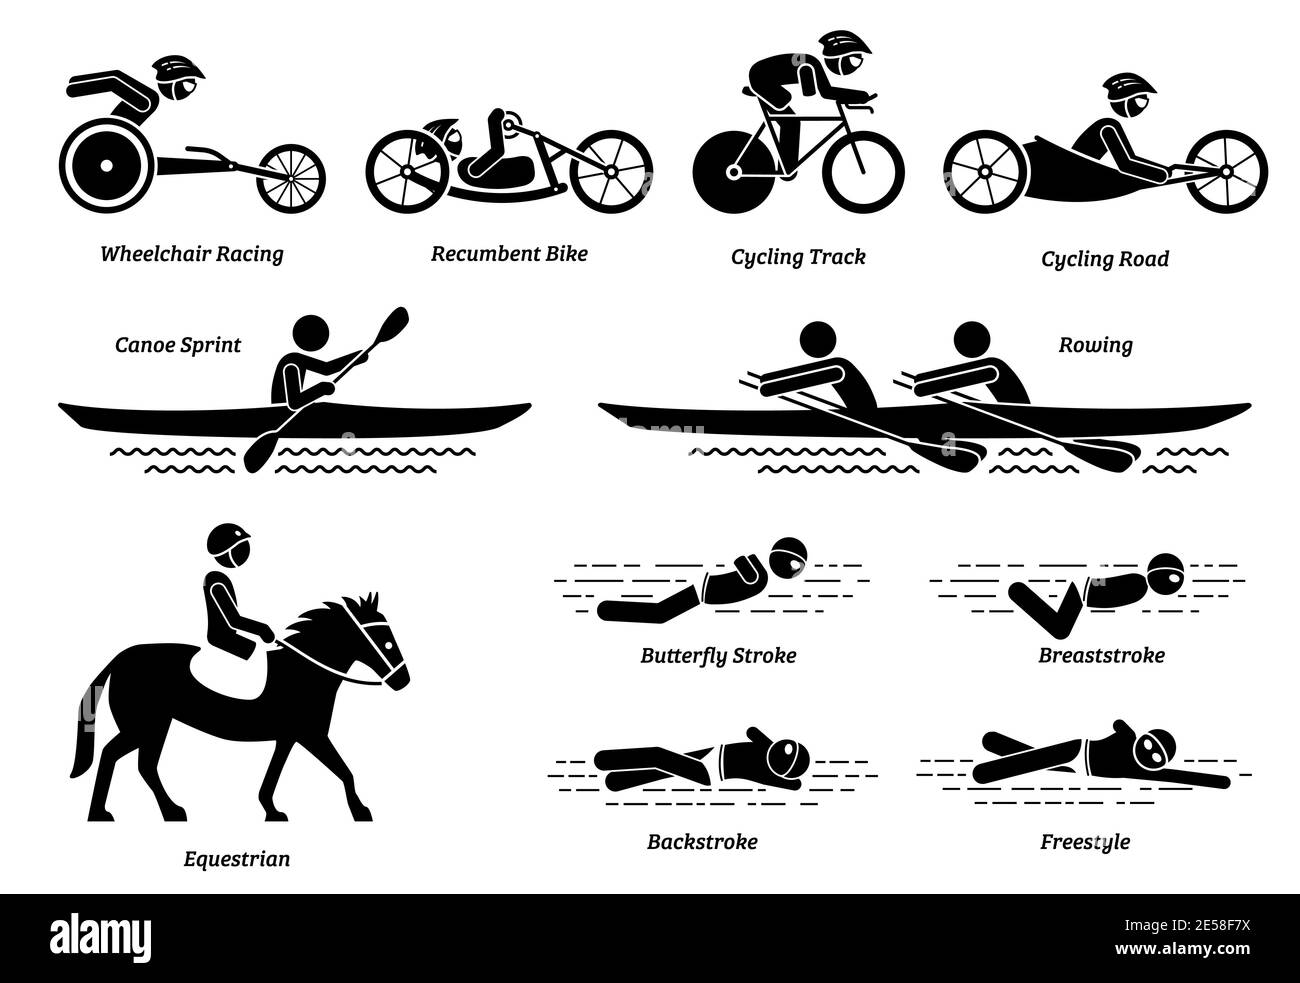 Behindertensport und Spiele für behinderte Sportler Stick Figuren Symbole. Vektor-Symbole von Rollstuhlrennen, Radfahren, Rudern, Reiten und Schwimmsport Stock Vektor